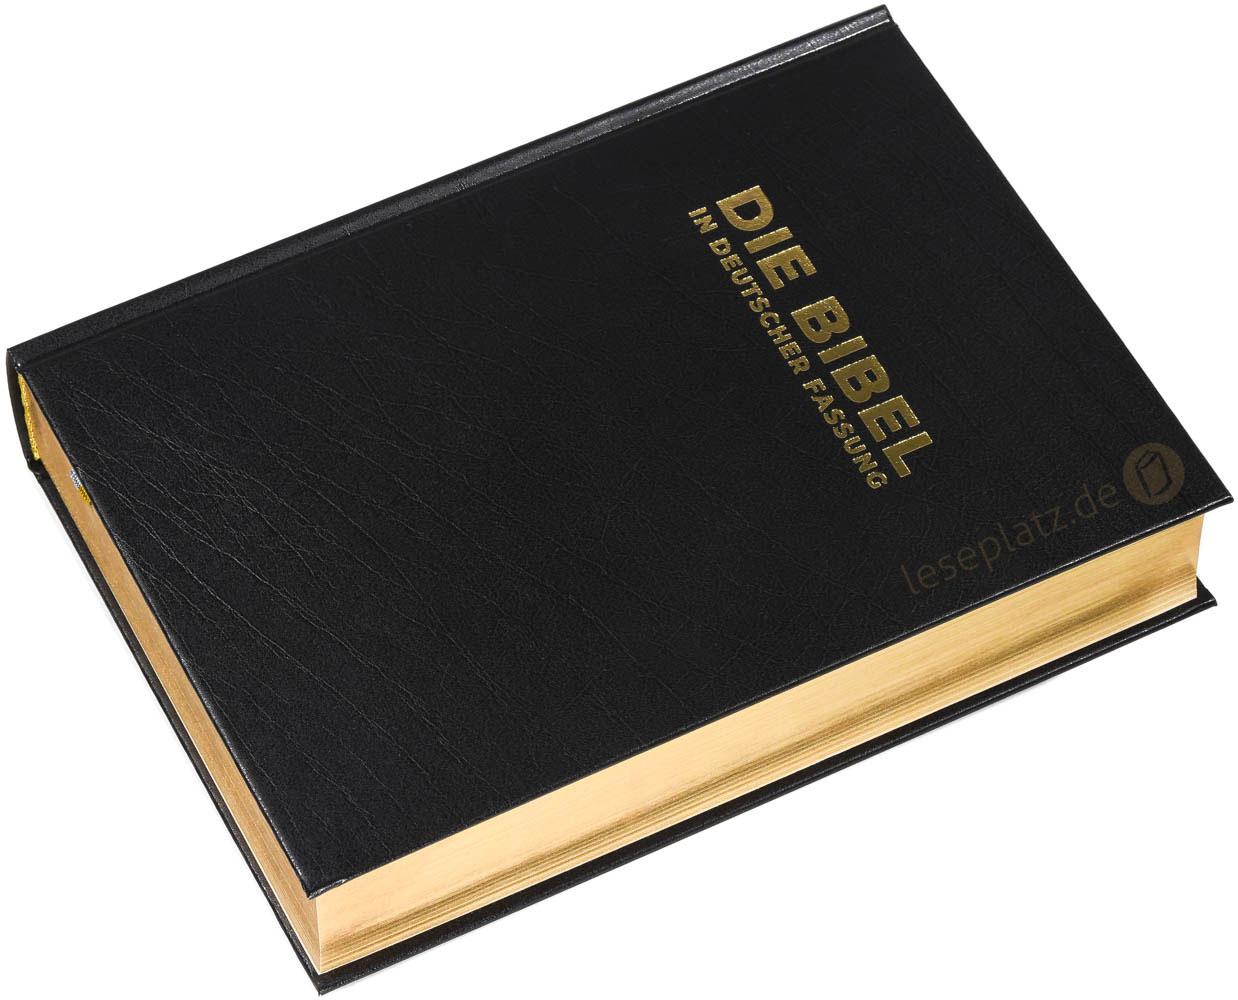 Die Bibel in deutscher Fassung - Standardausgabe Hardcover / Goldschnitt